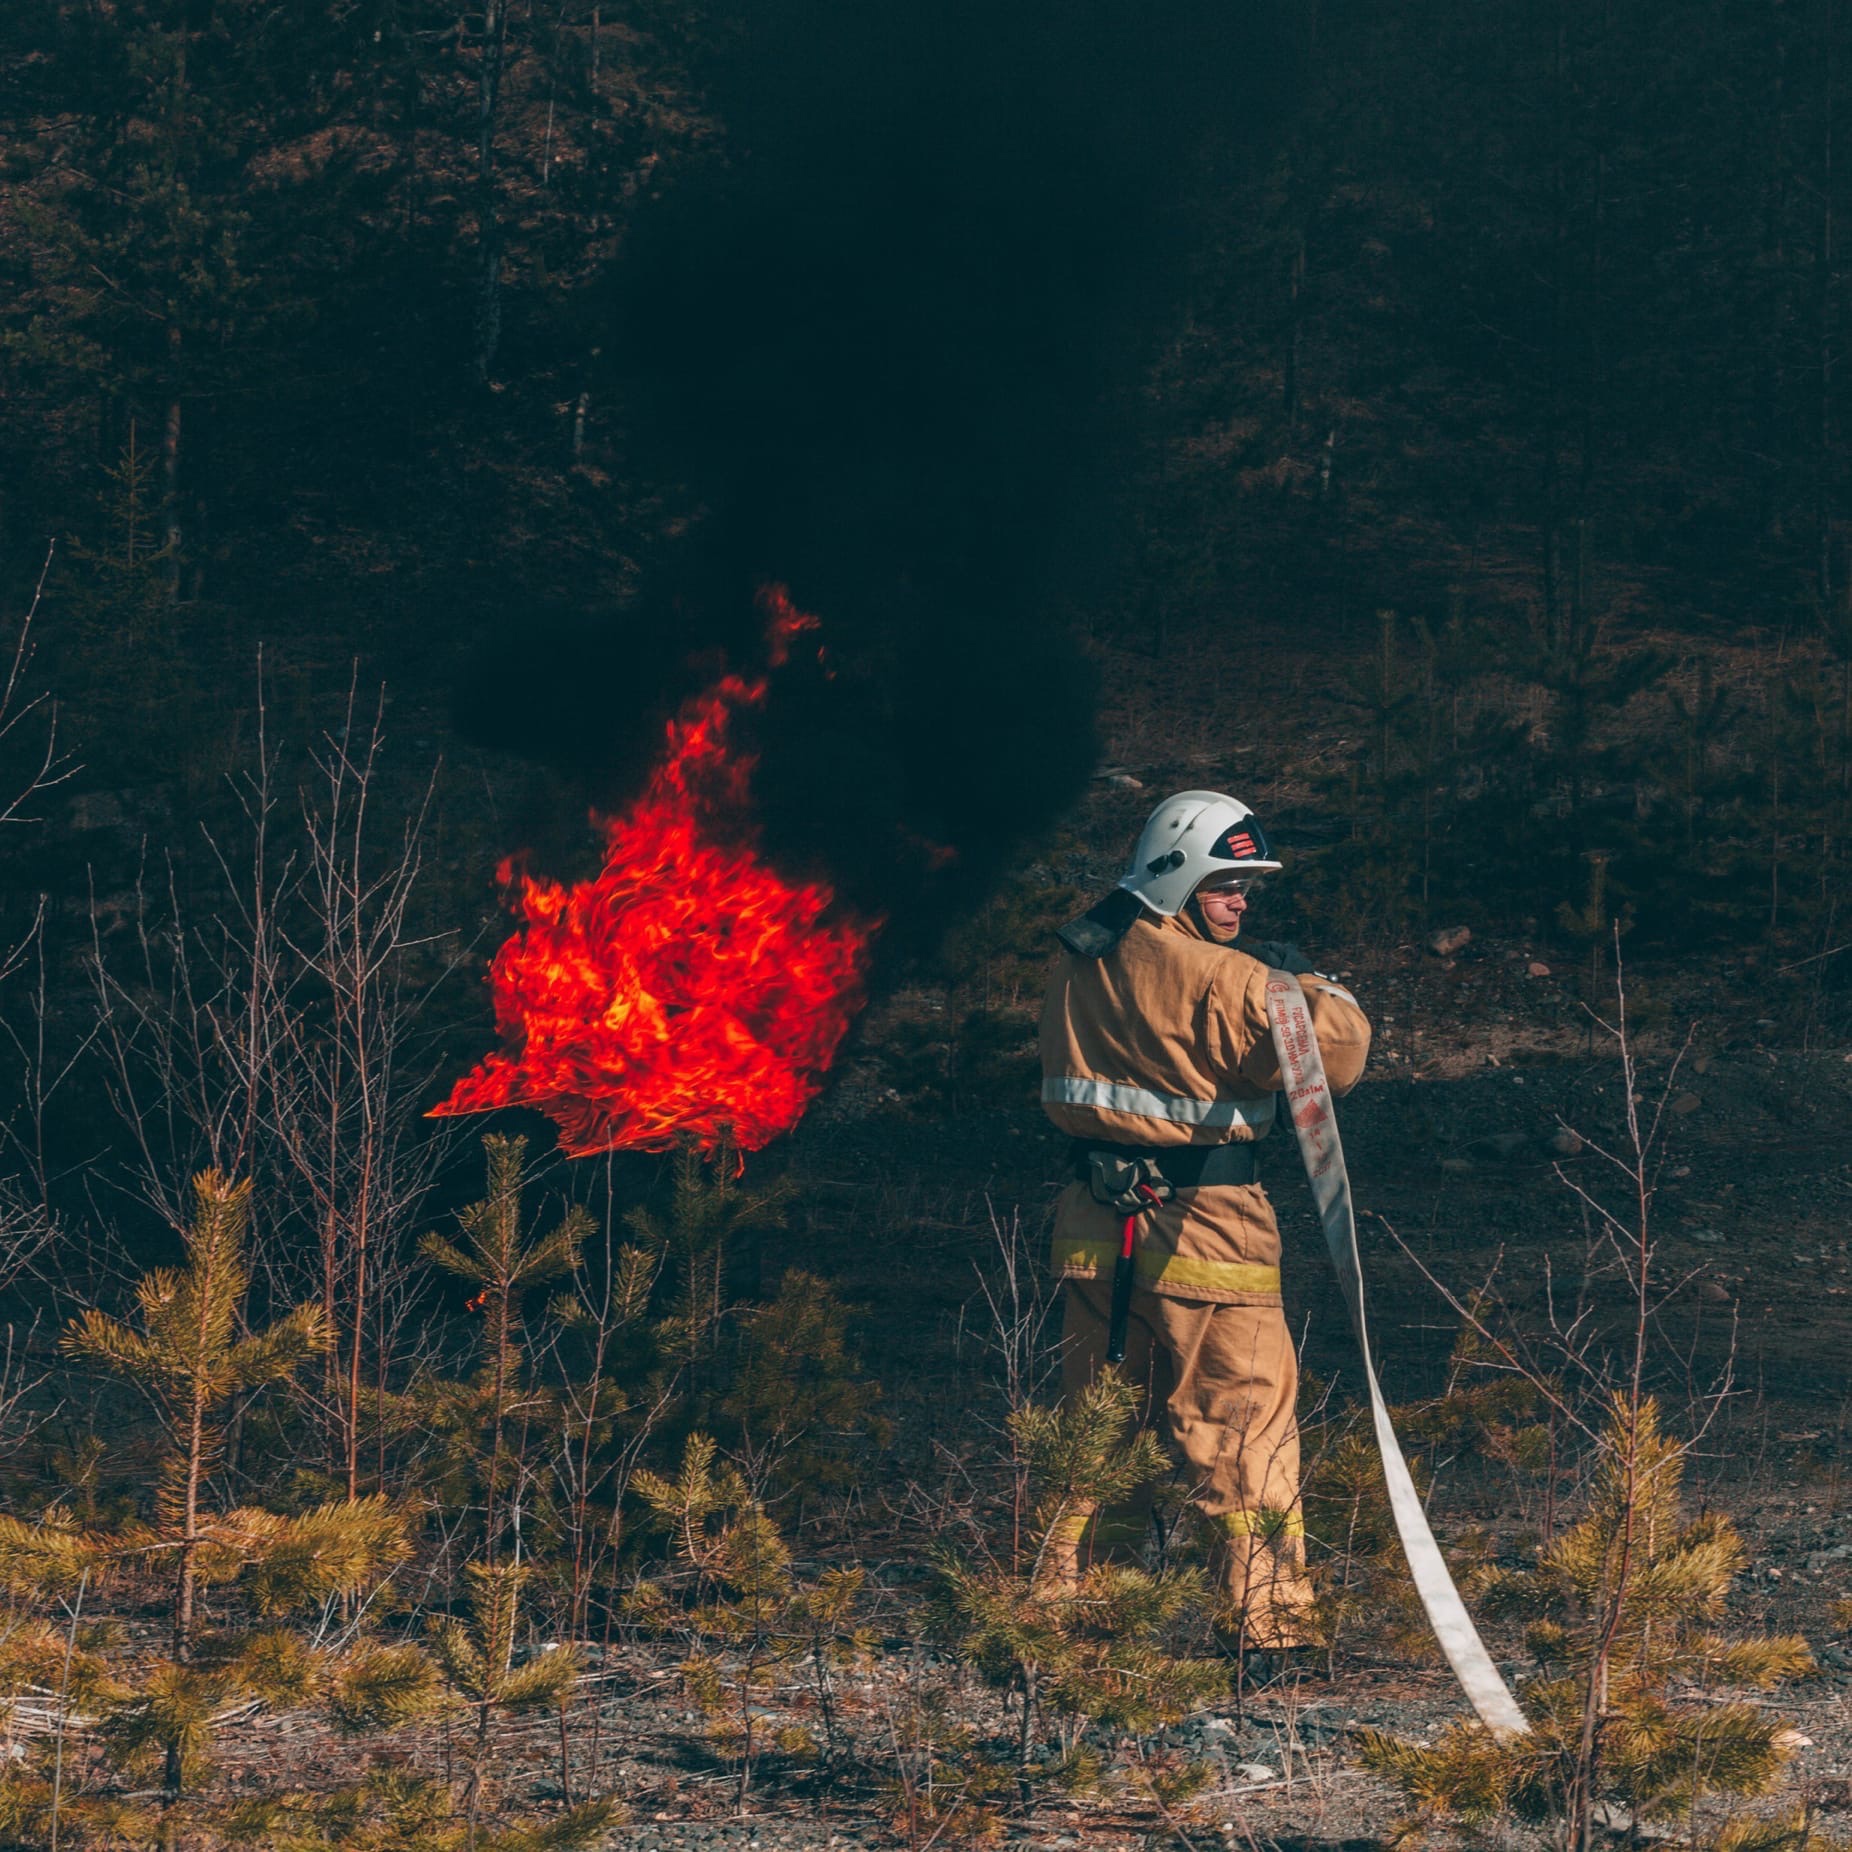 Asetuksen voimassaolon aikana on kielletty nuotioiden teko metsissä. Kuva: Karjalan luonnonvarain- ja ympäristöministeriön VKontakte-sivu